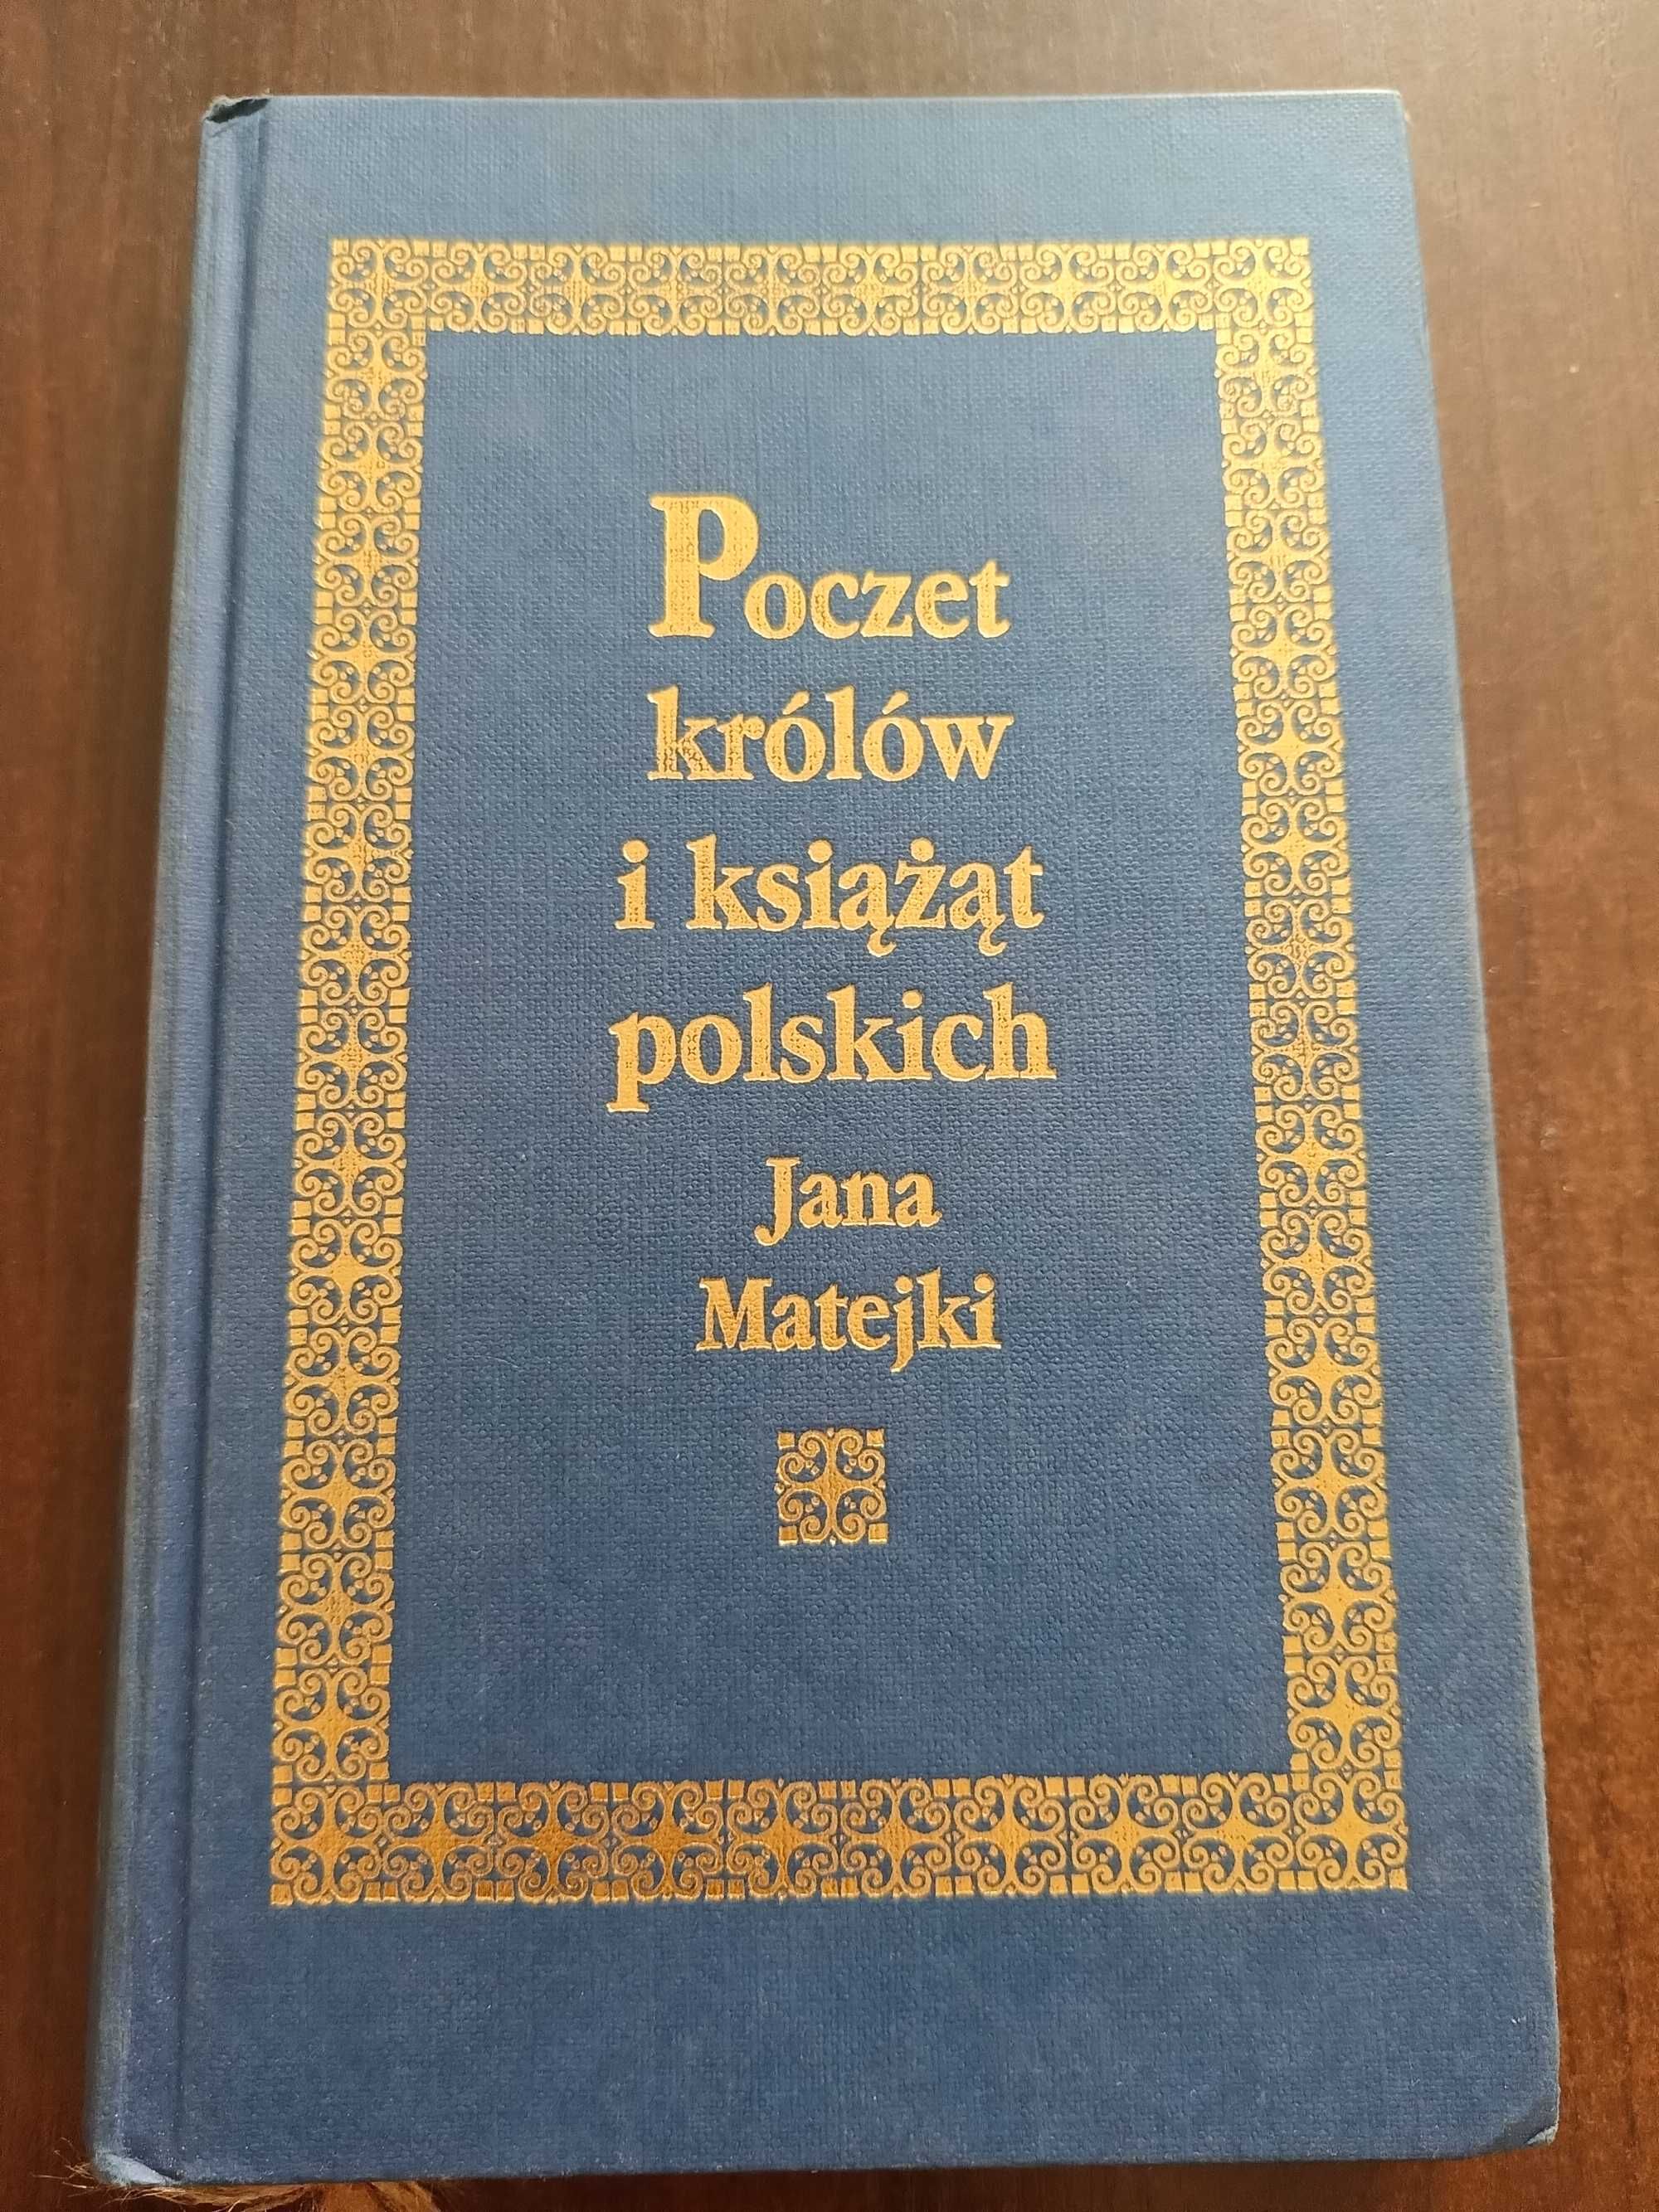 "Poczet królów i książąt polskich"- J. Matejka